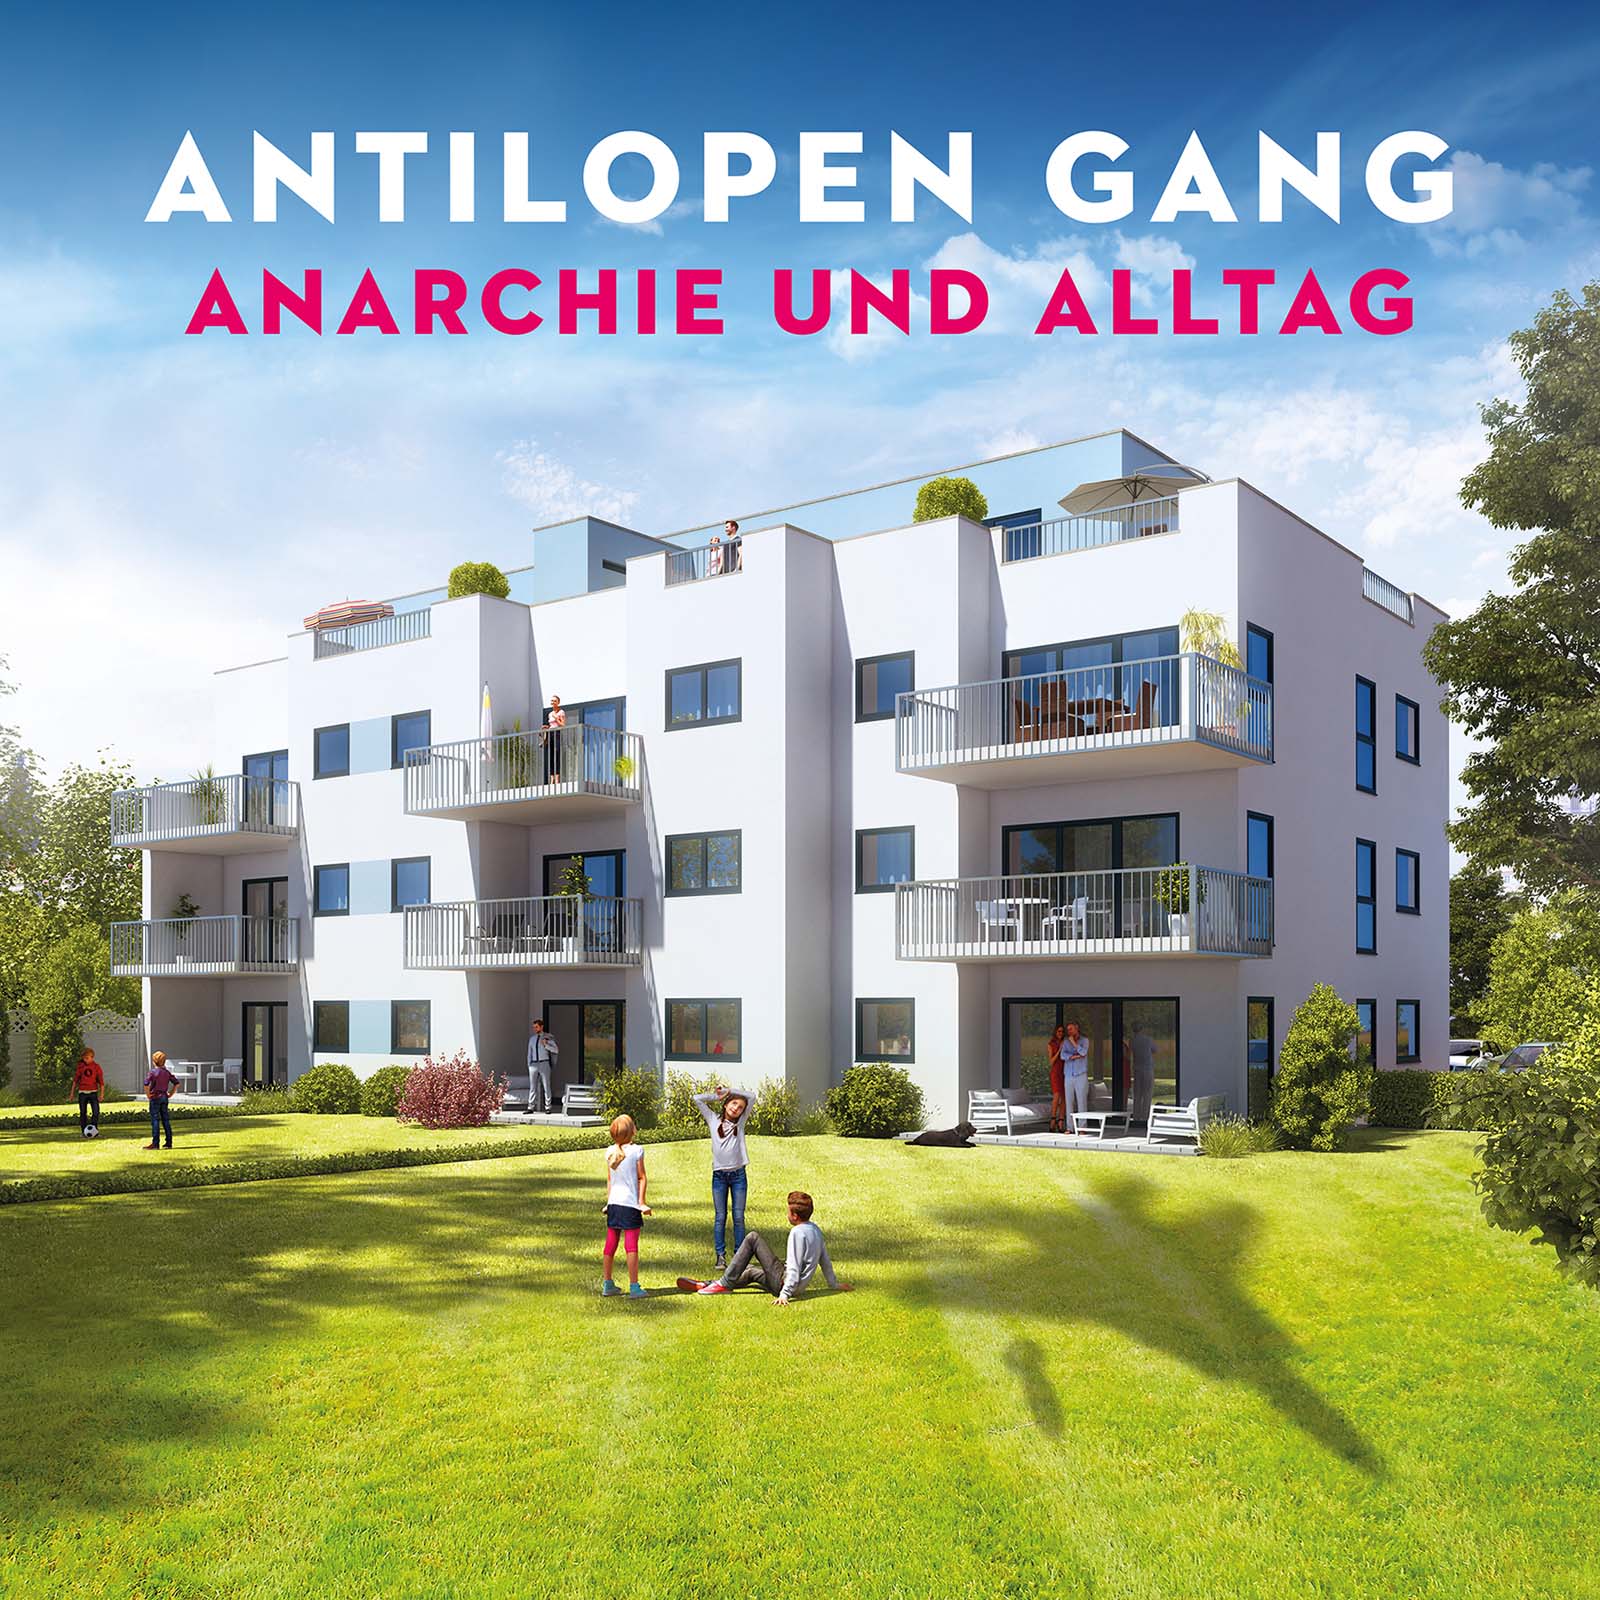 Antilopen Gang – ANARCHIE UND ALLTAG, VÖ: 20.01.2017